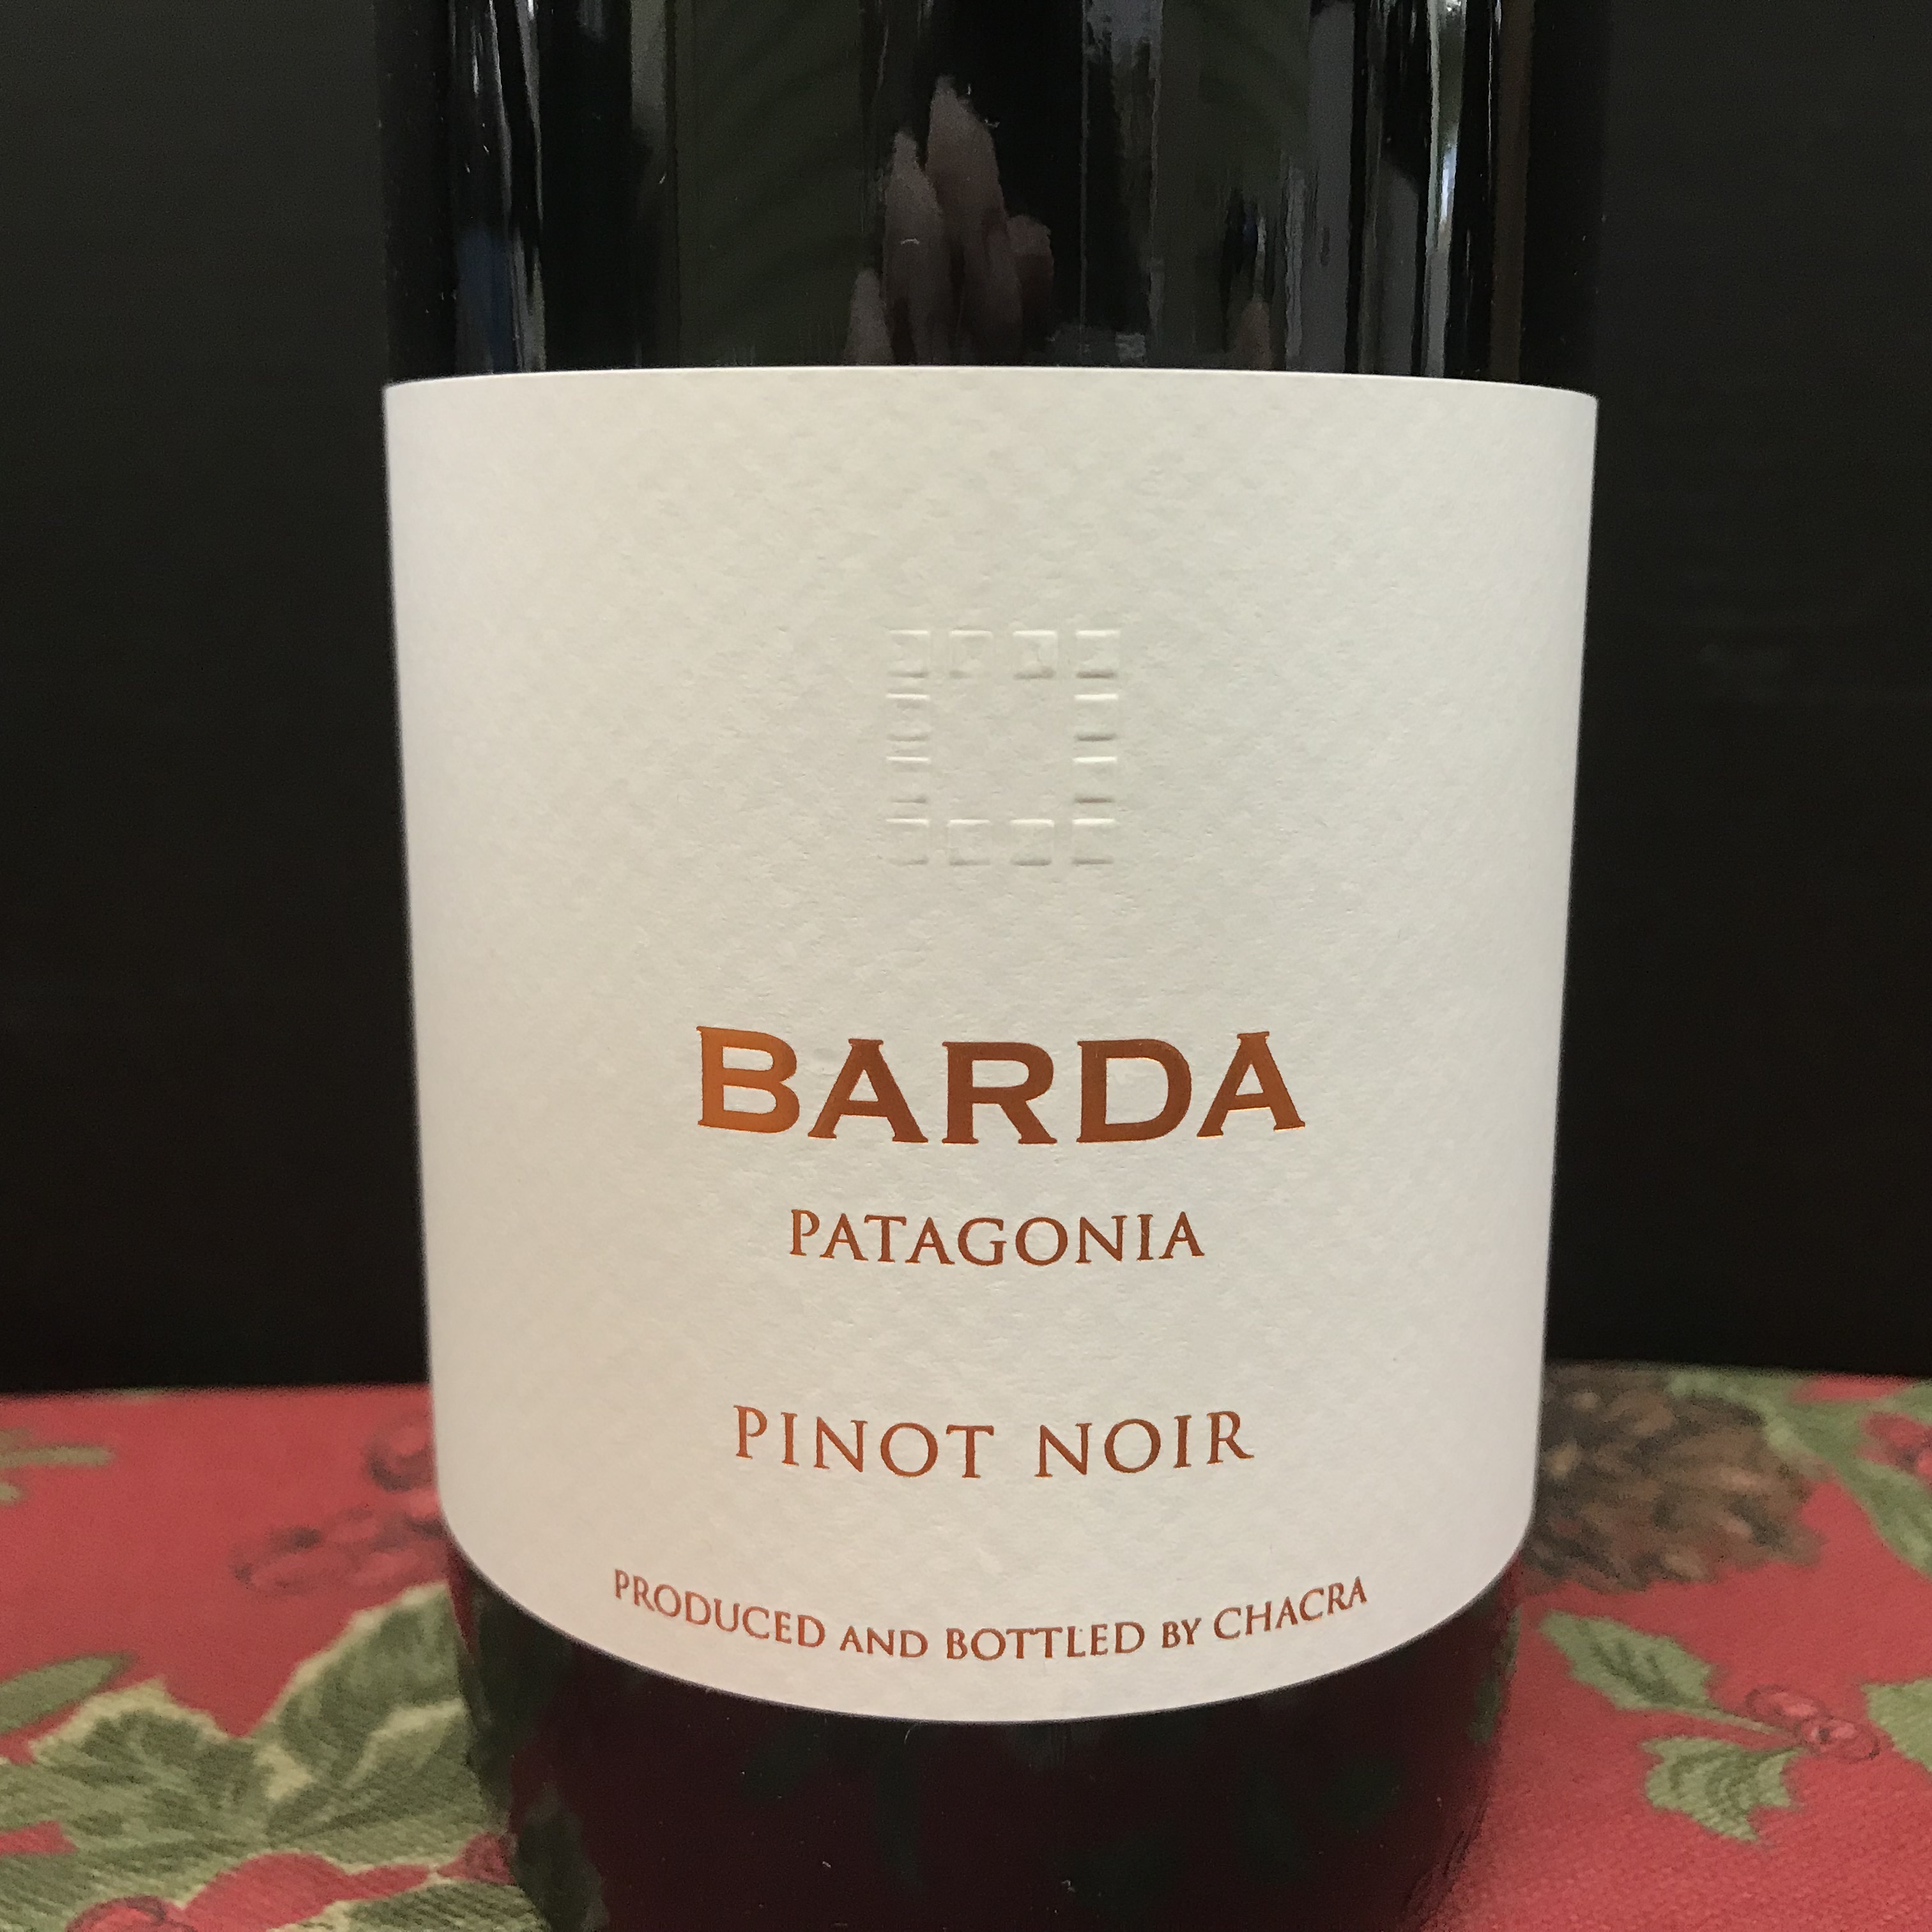 Bodega Chacra Barda Patagonia Pinot Noir 2019